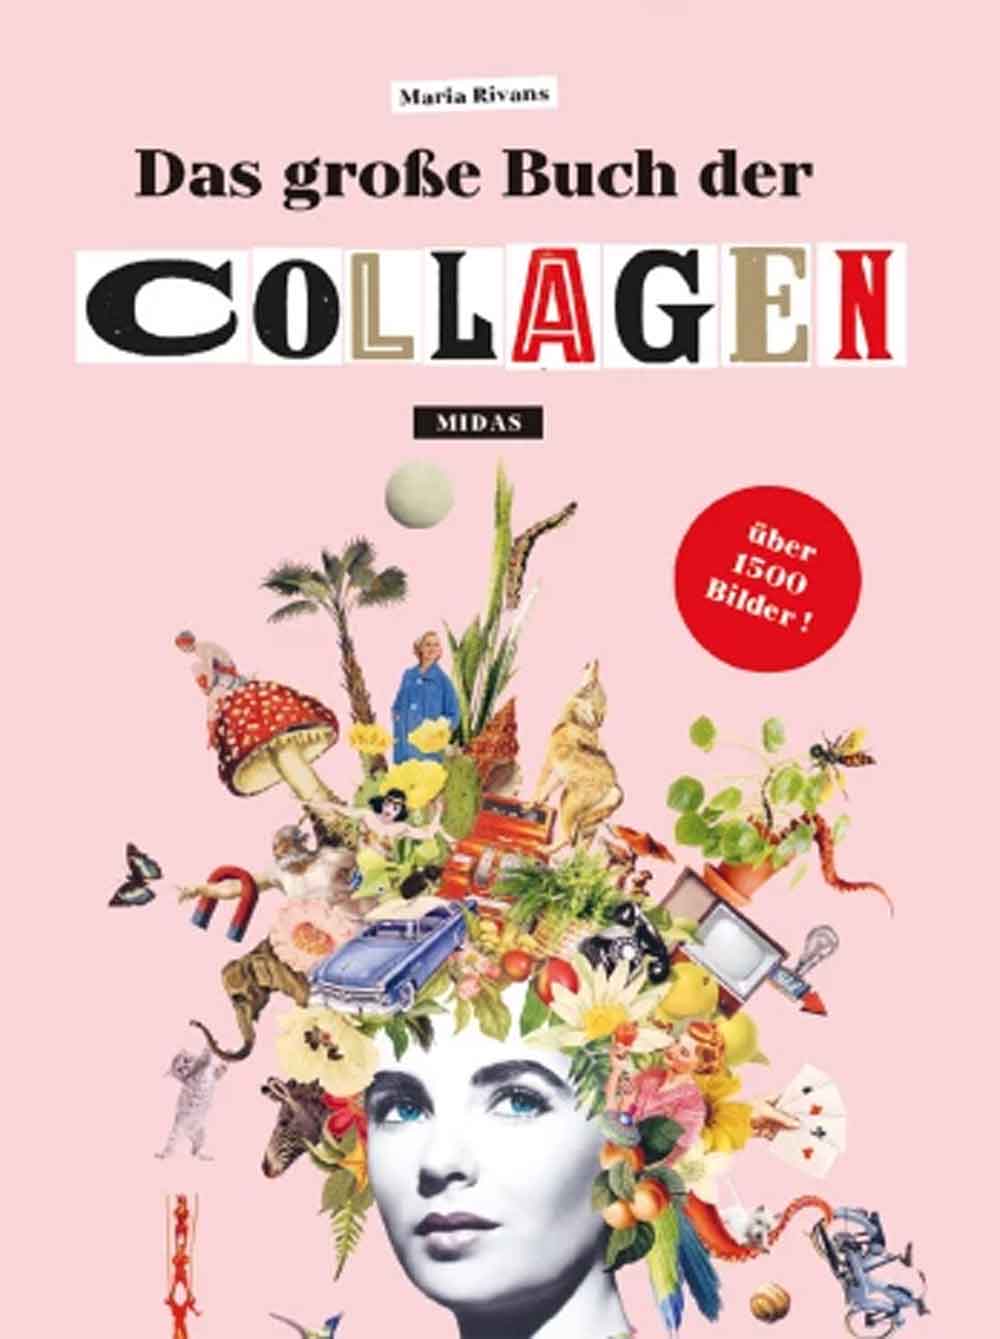 Lesetipps für Gütersloh: »Das große Buch der Collagen« von Maria Rivans (Midas Collection)